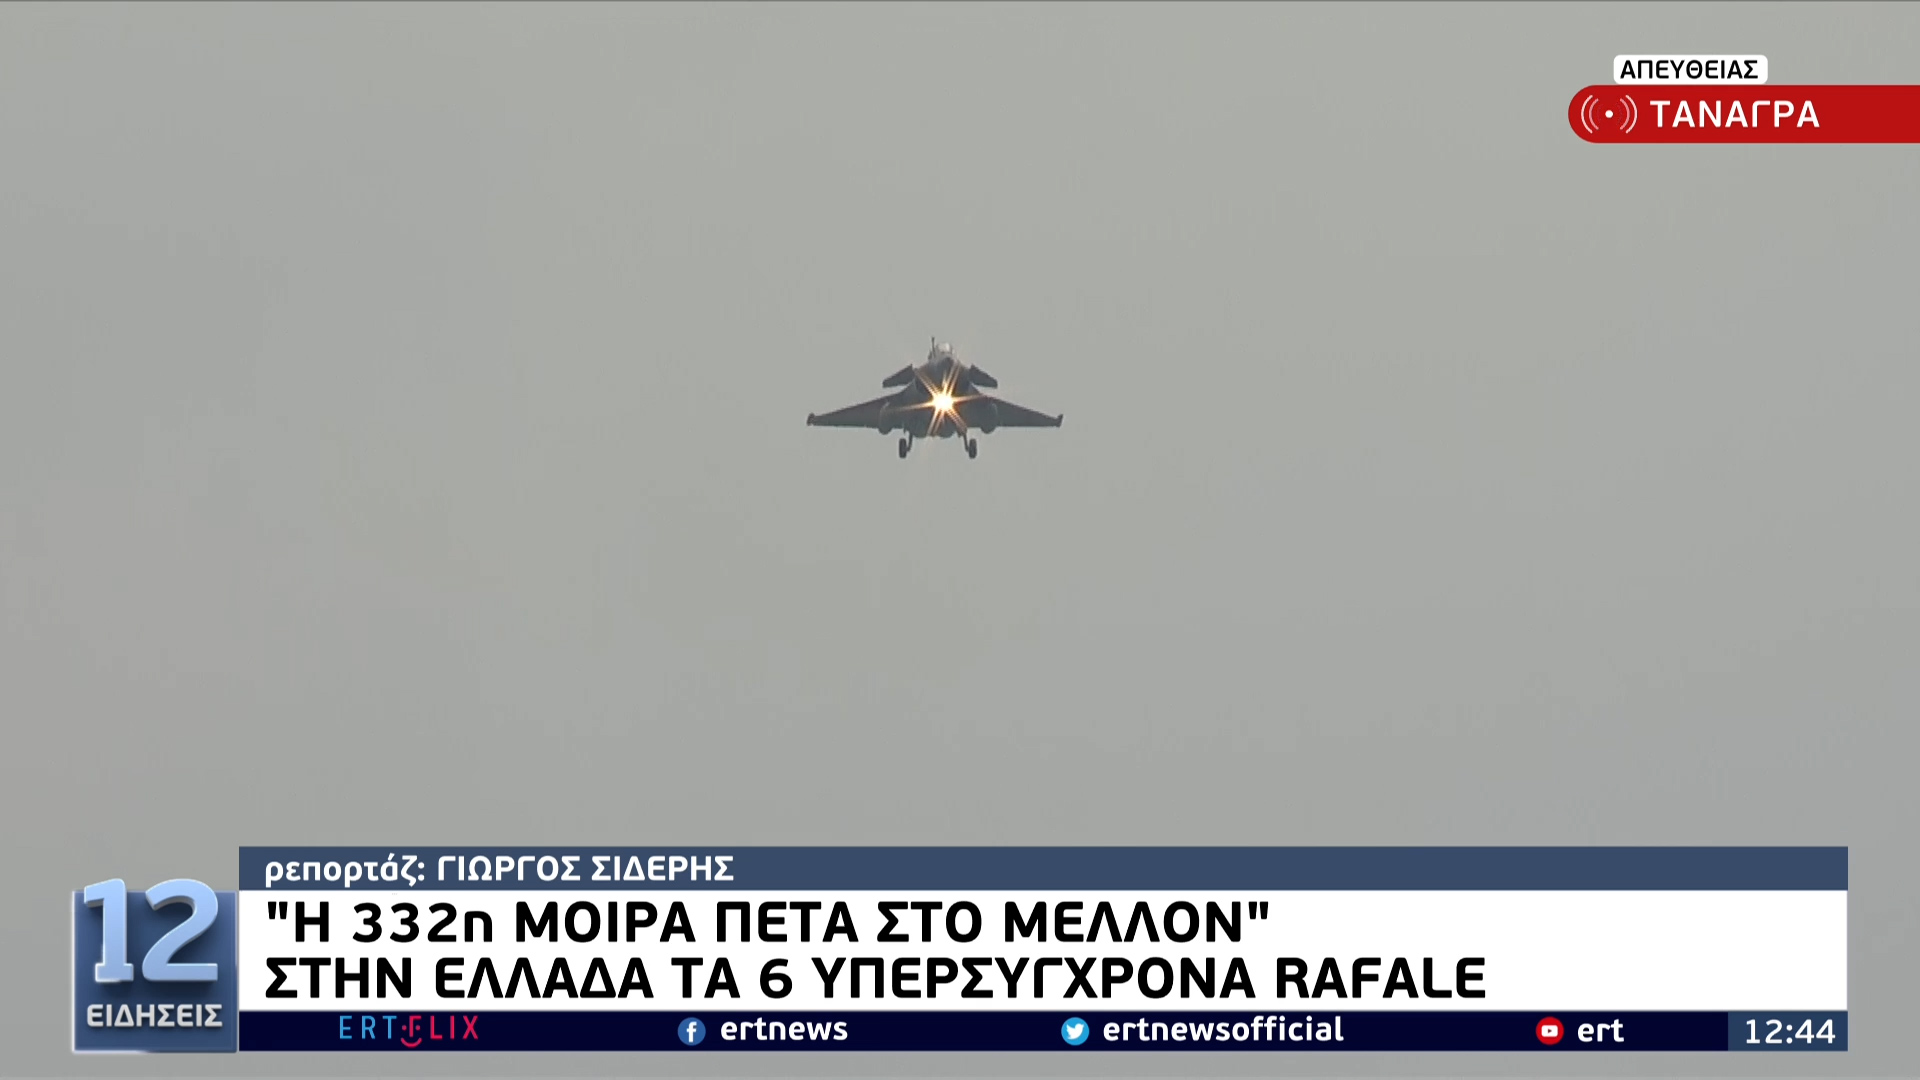 اليونان طائرات رافال - 'مرحبًا بكم في منزلكم': رسالة برج المراقبة الى طائرات رافال - صور فيديو